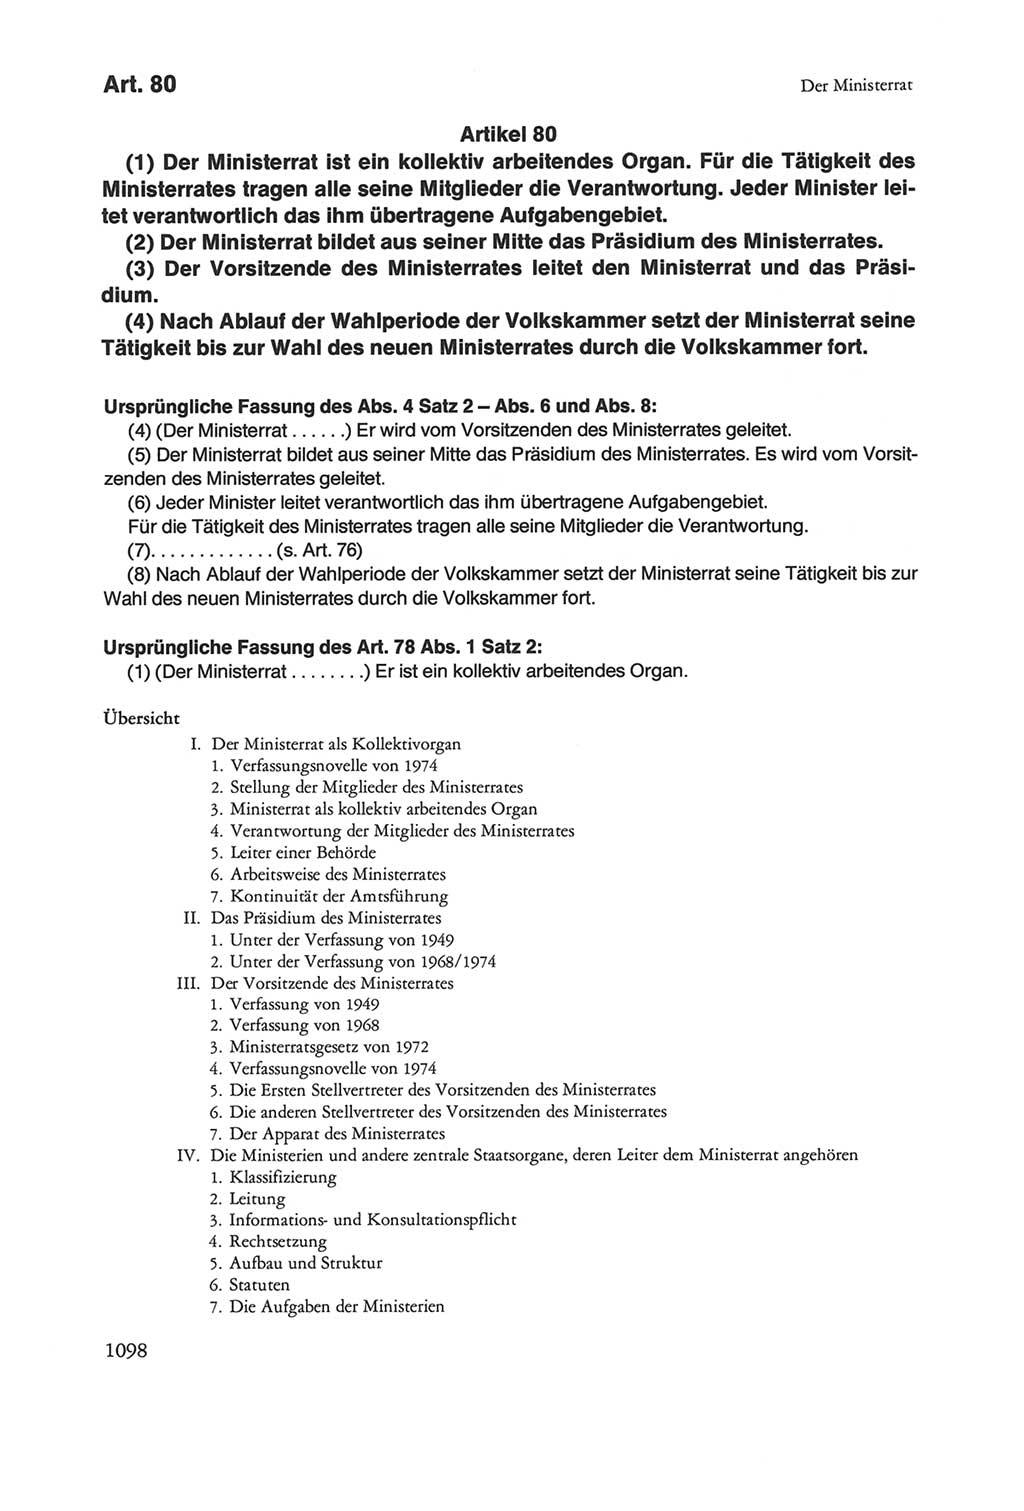 Die sozialistische Verfassung der Deutschen Demokratischen Republik (DDR), Kommentar 1982, Seite 1098 (Soz. Verf. DDR Komm. 1982, S. 1098)